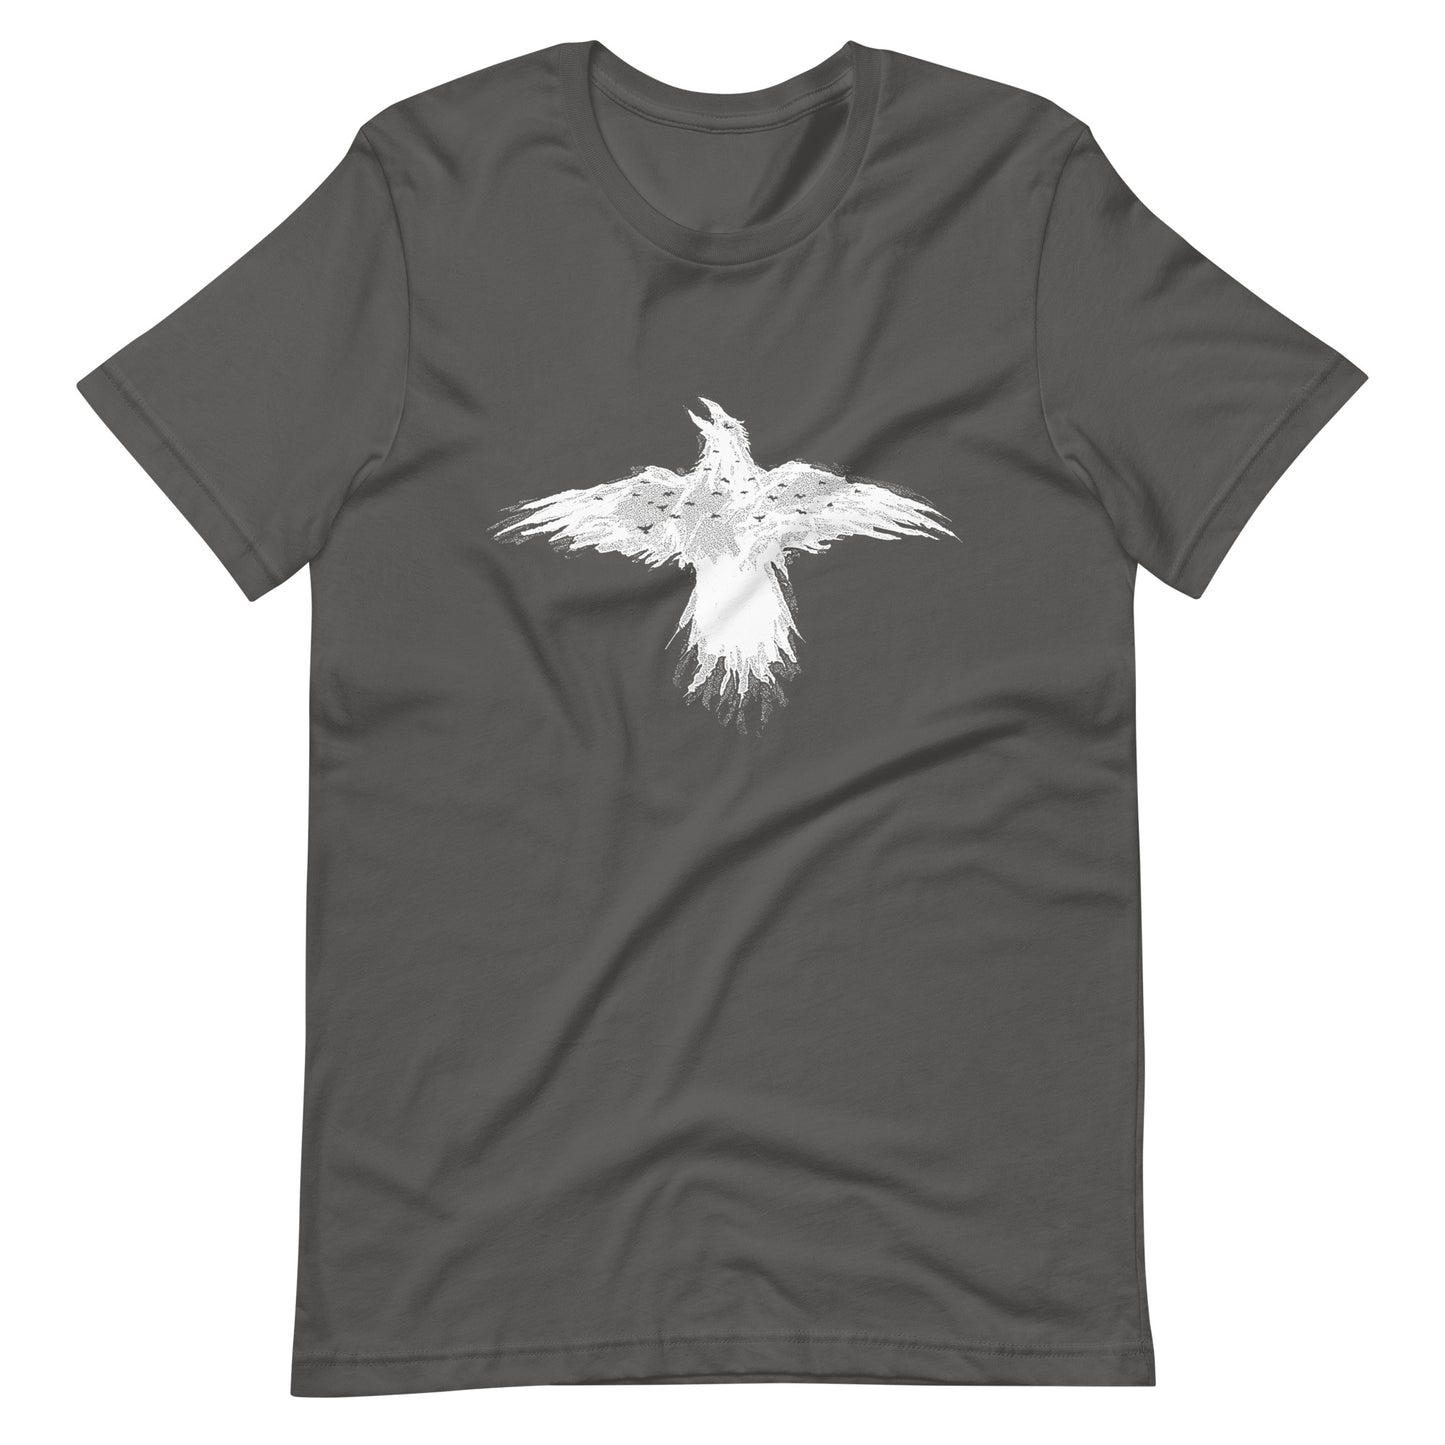 Flying Crow - Men's t-shirt - Asphalt Front